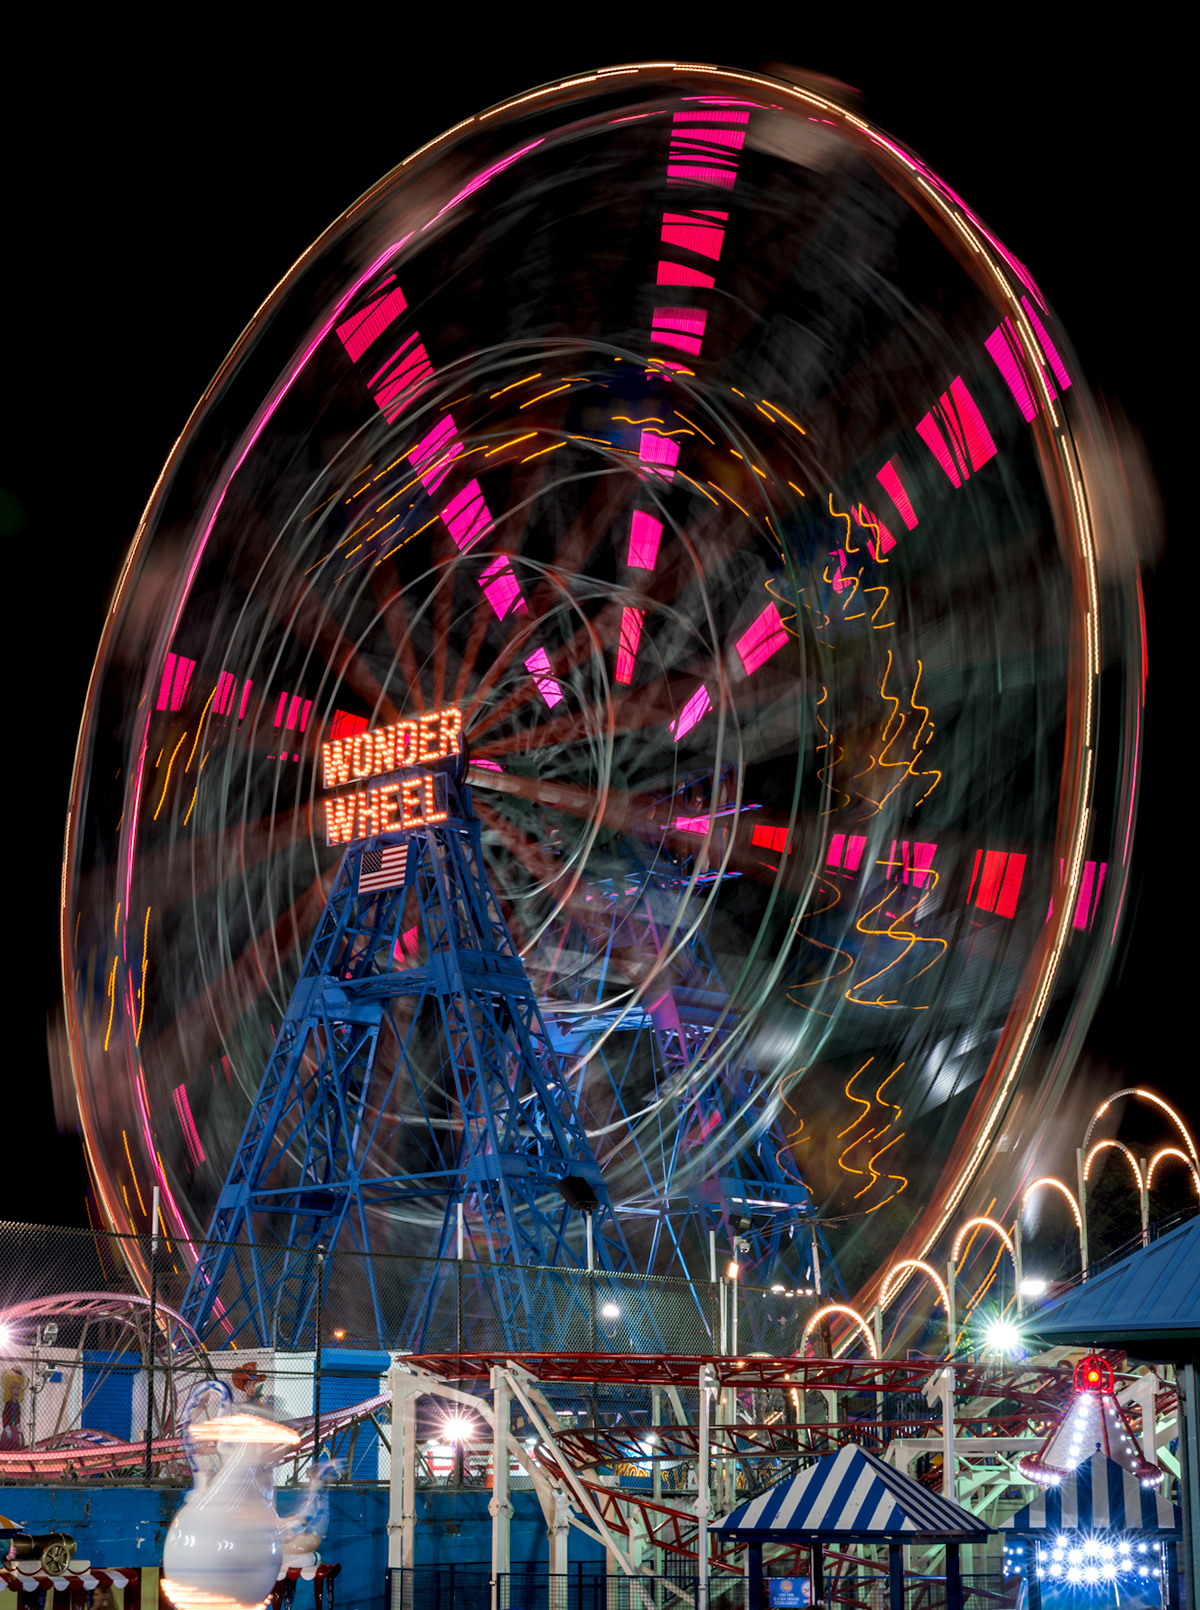 Brooklyn Nikon D800 New York richard silver nyc coney island boardwalk beach amusement park rollercoaster cyclone wonder wheel